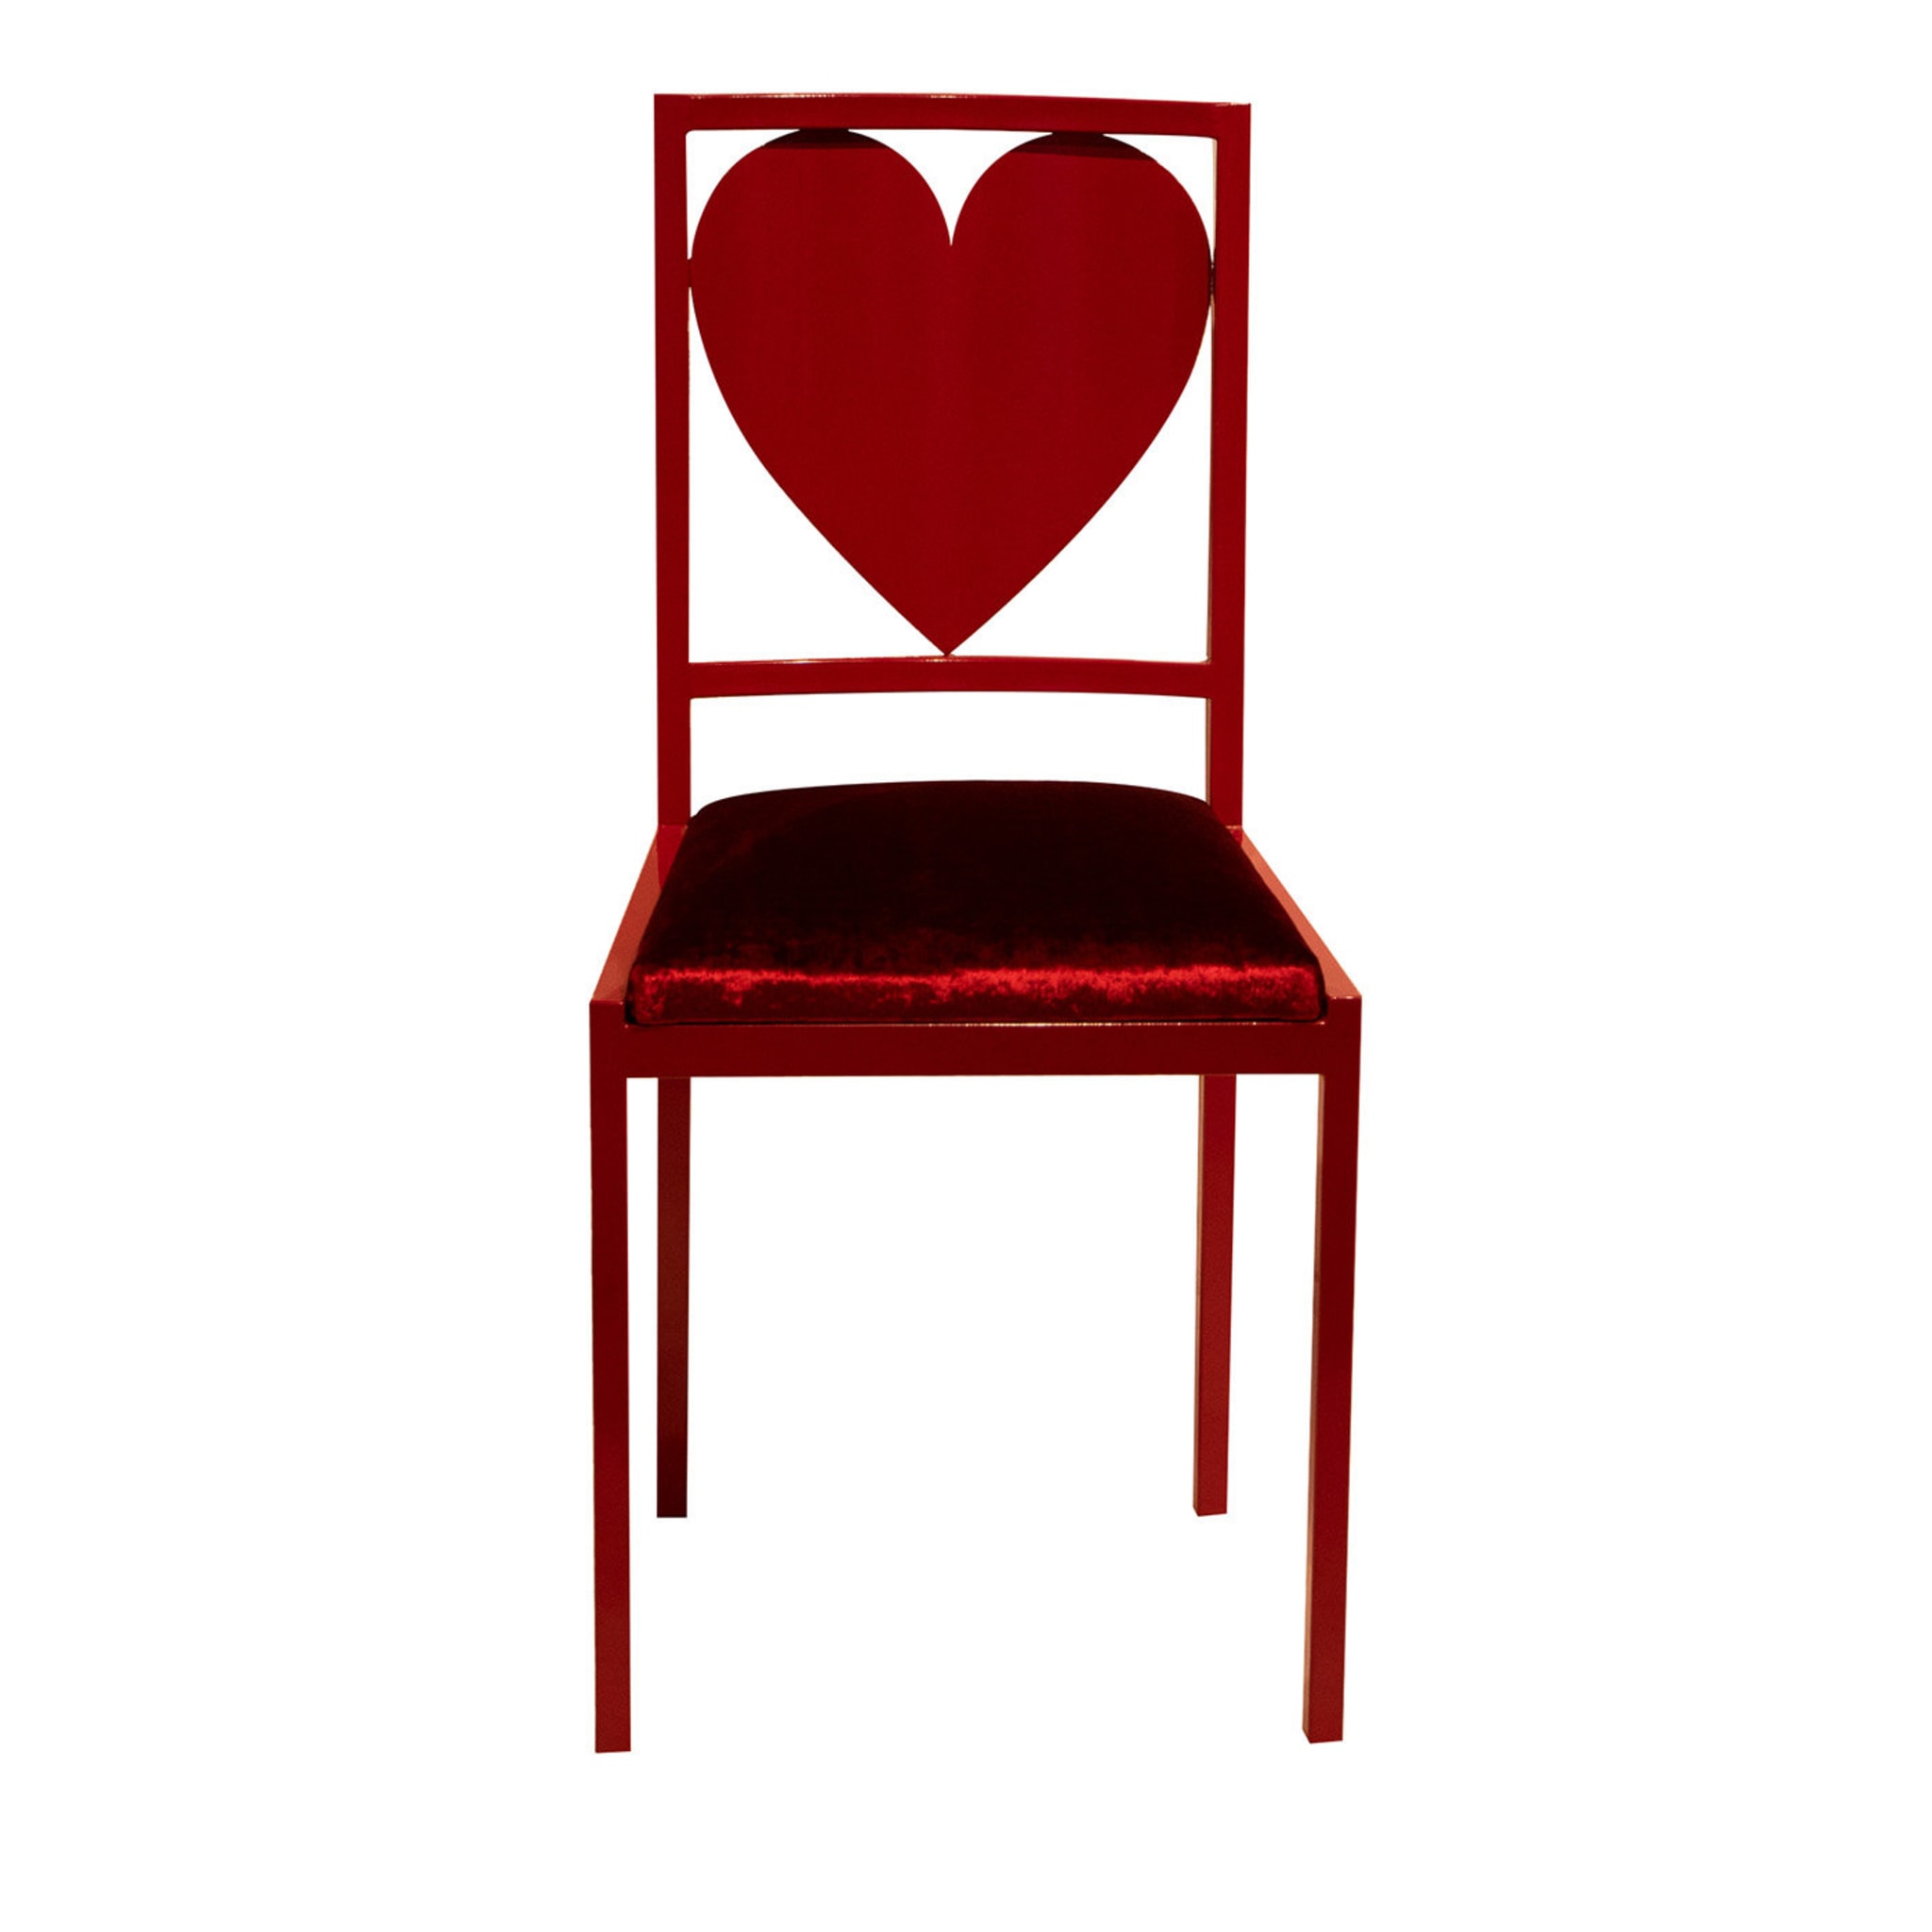 Heart Chair - Main view